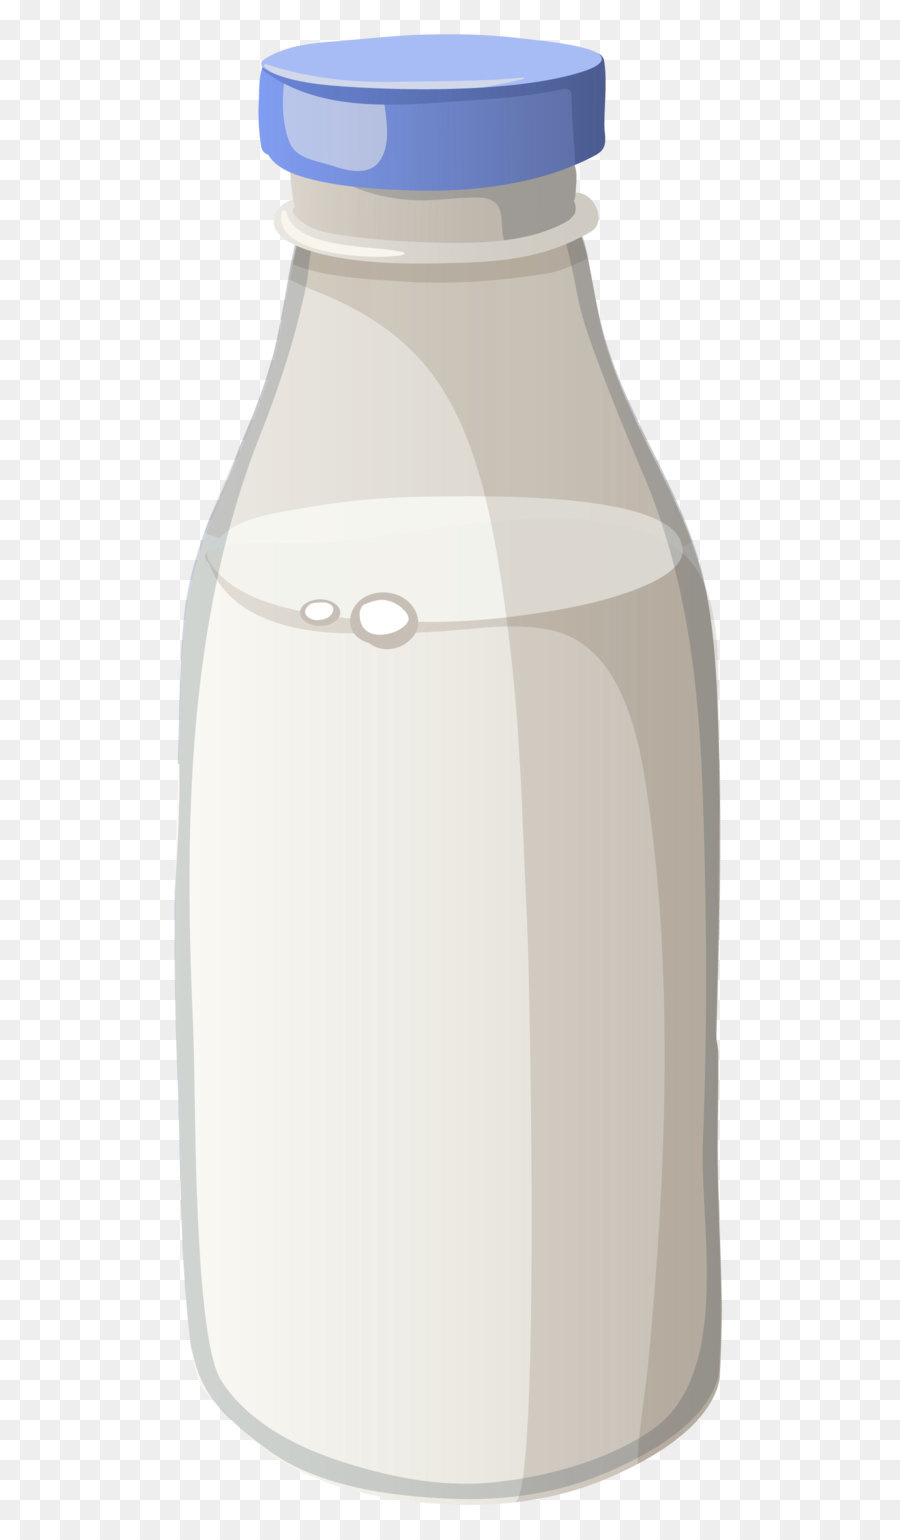 Soured milk Bottle Breakfast - Bottle of Milk PNG Vector Clipart Image png download - 1338*3167 - Free Transparent Milk png Download.